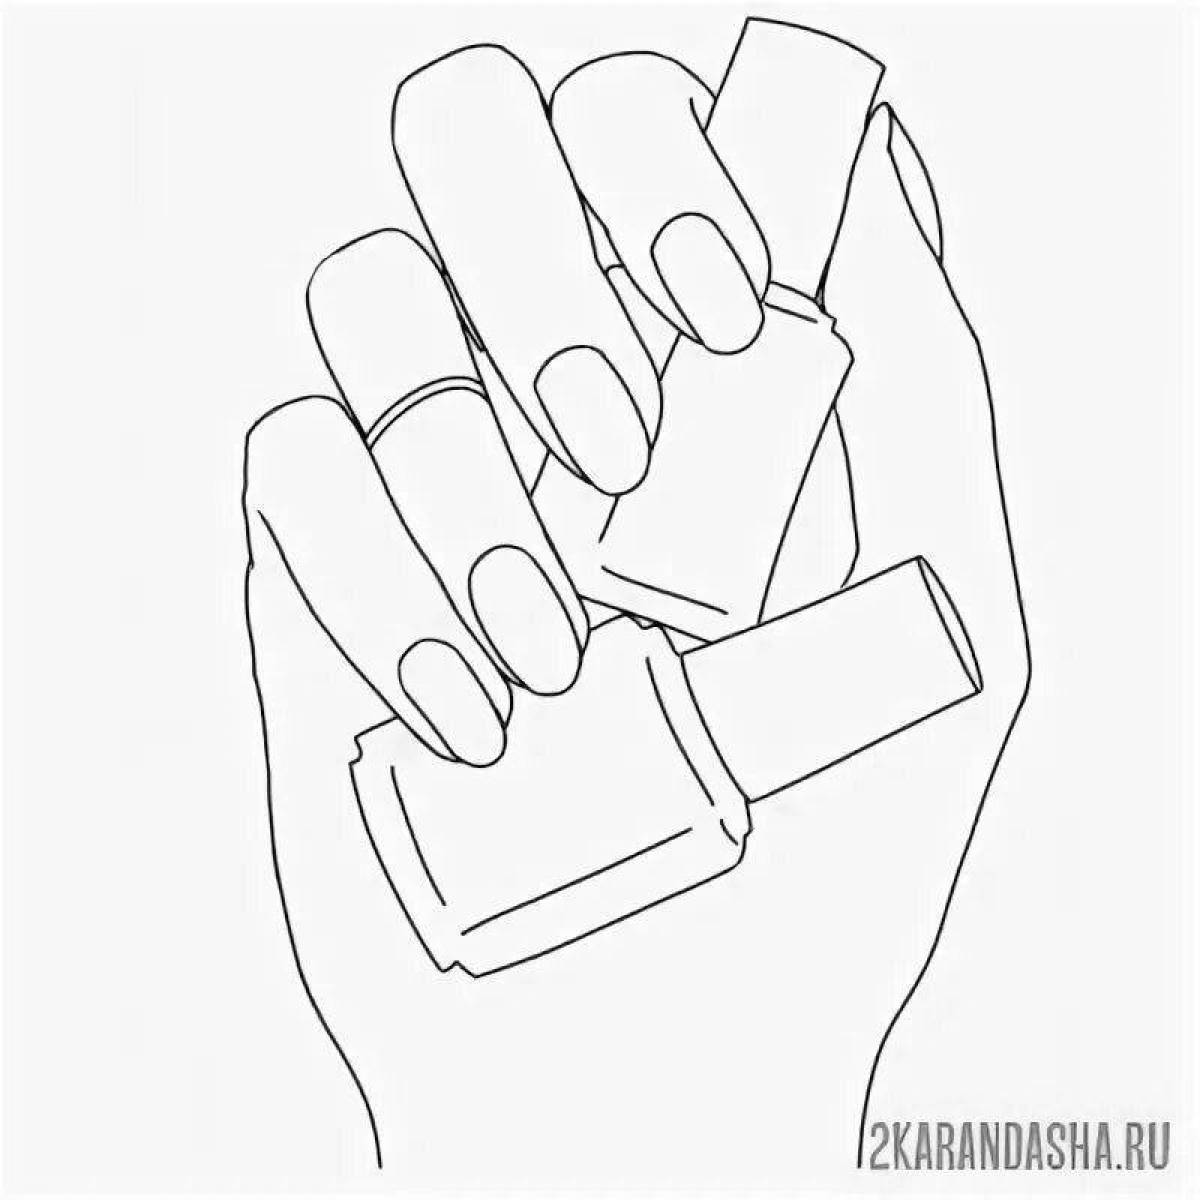 Ударная рука с ногтями для маникюра